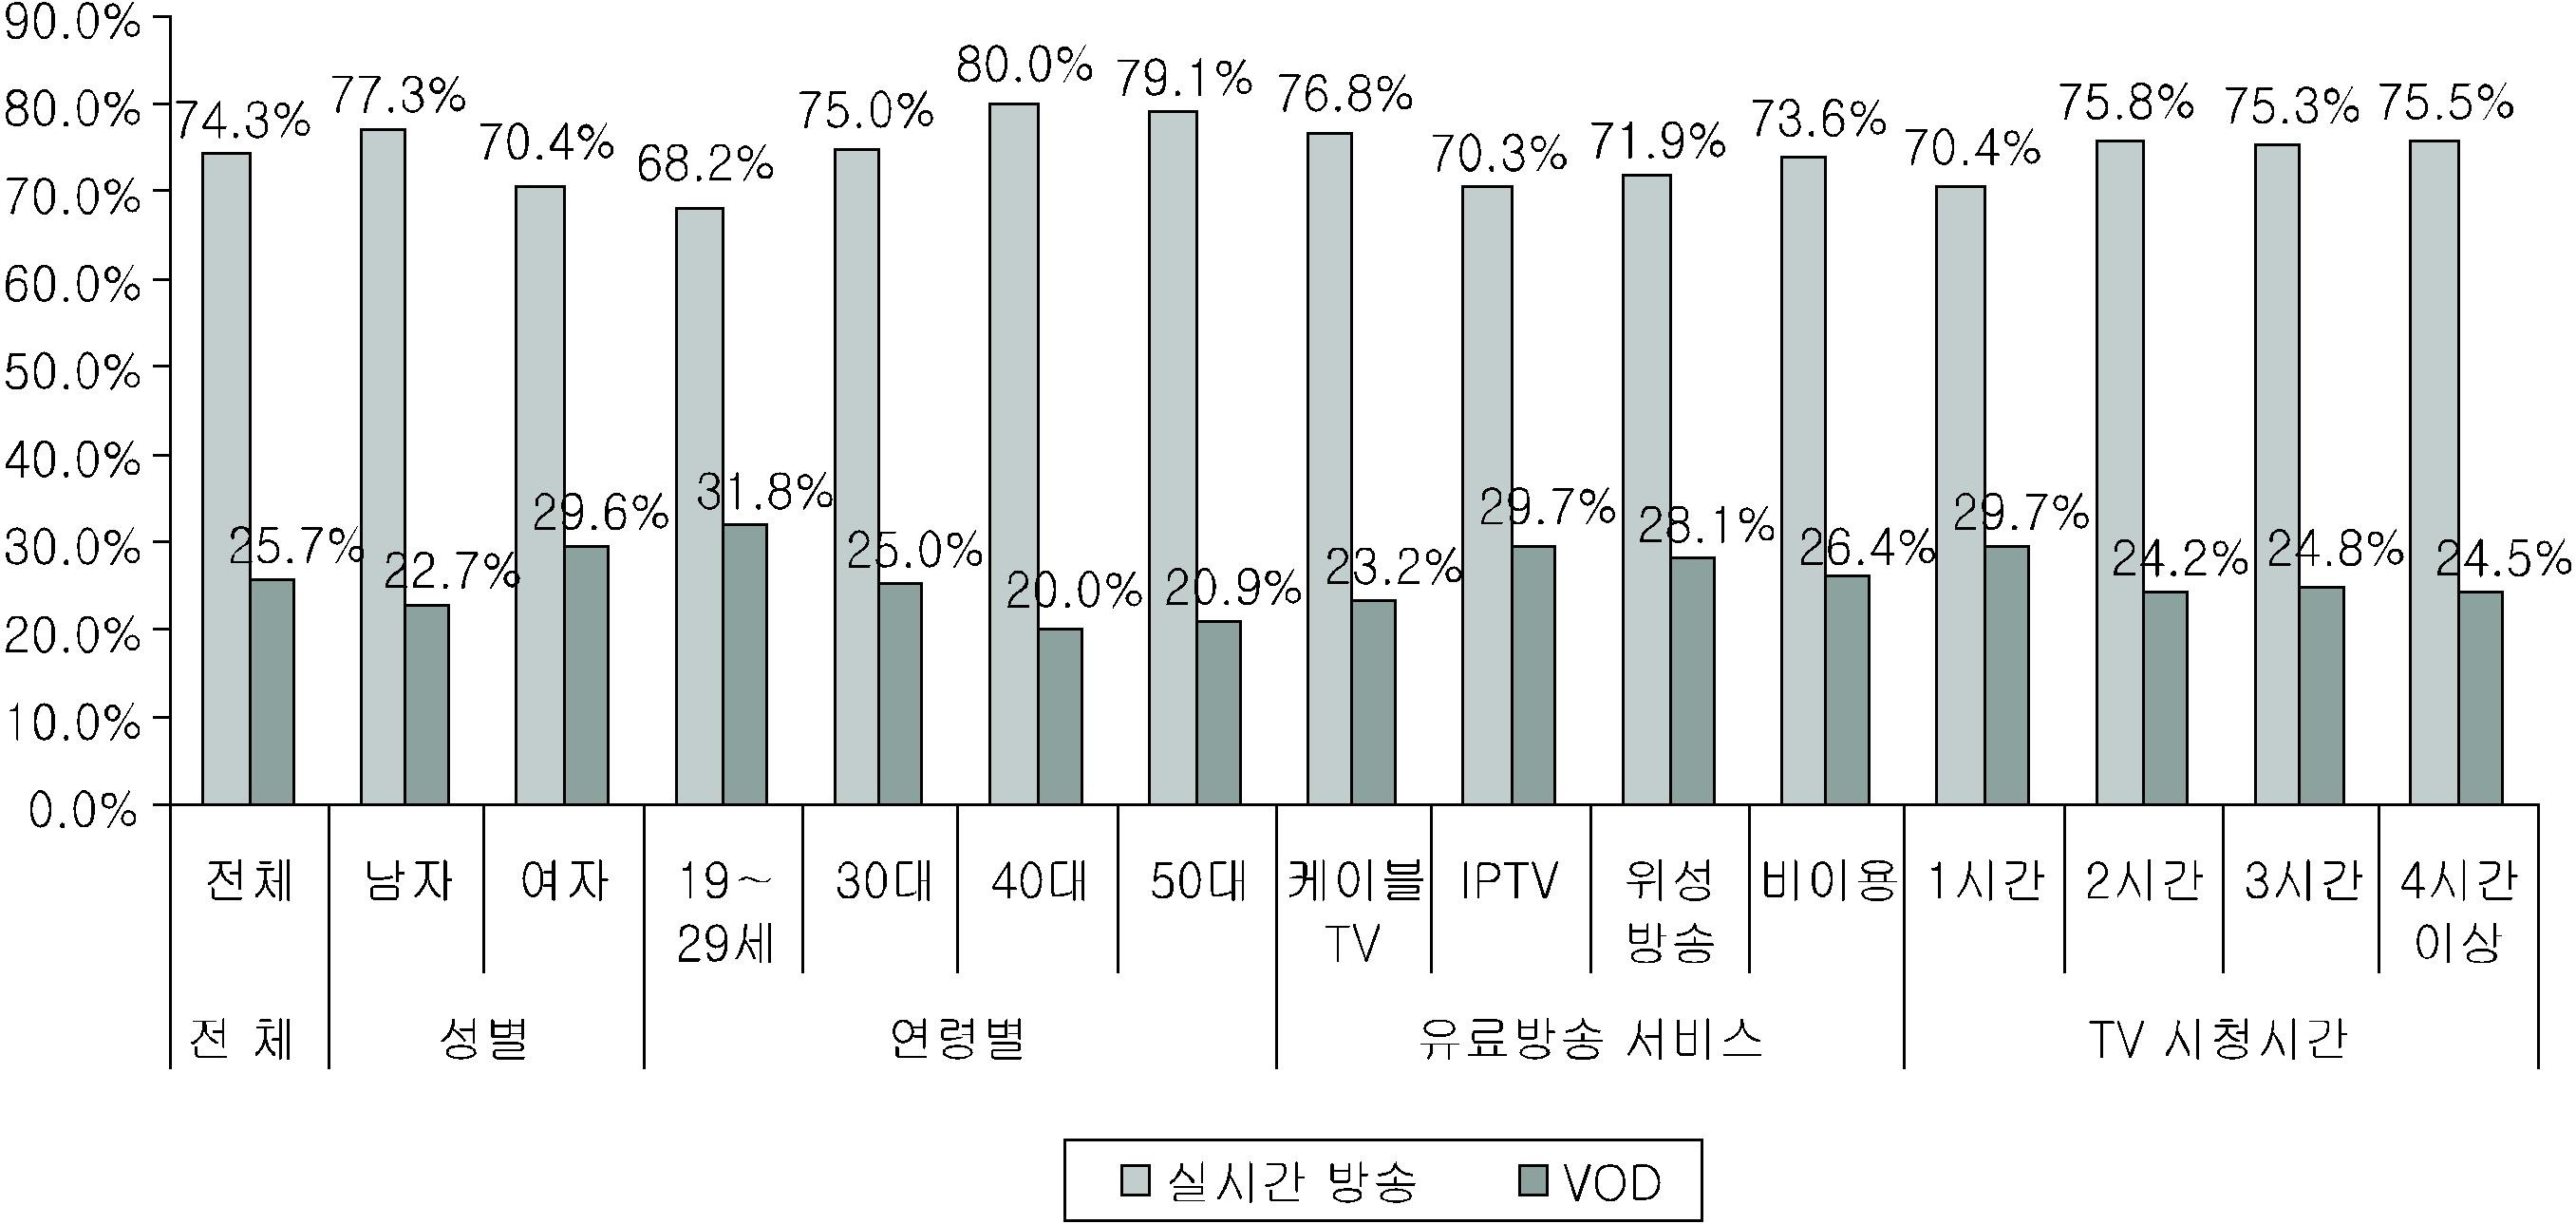 TV 시청 중 실시간 방송 이용 비율 특성별 분석